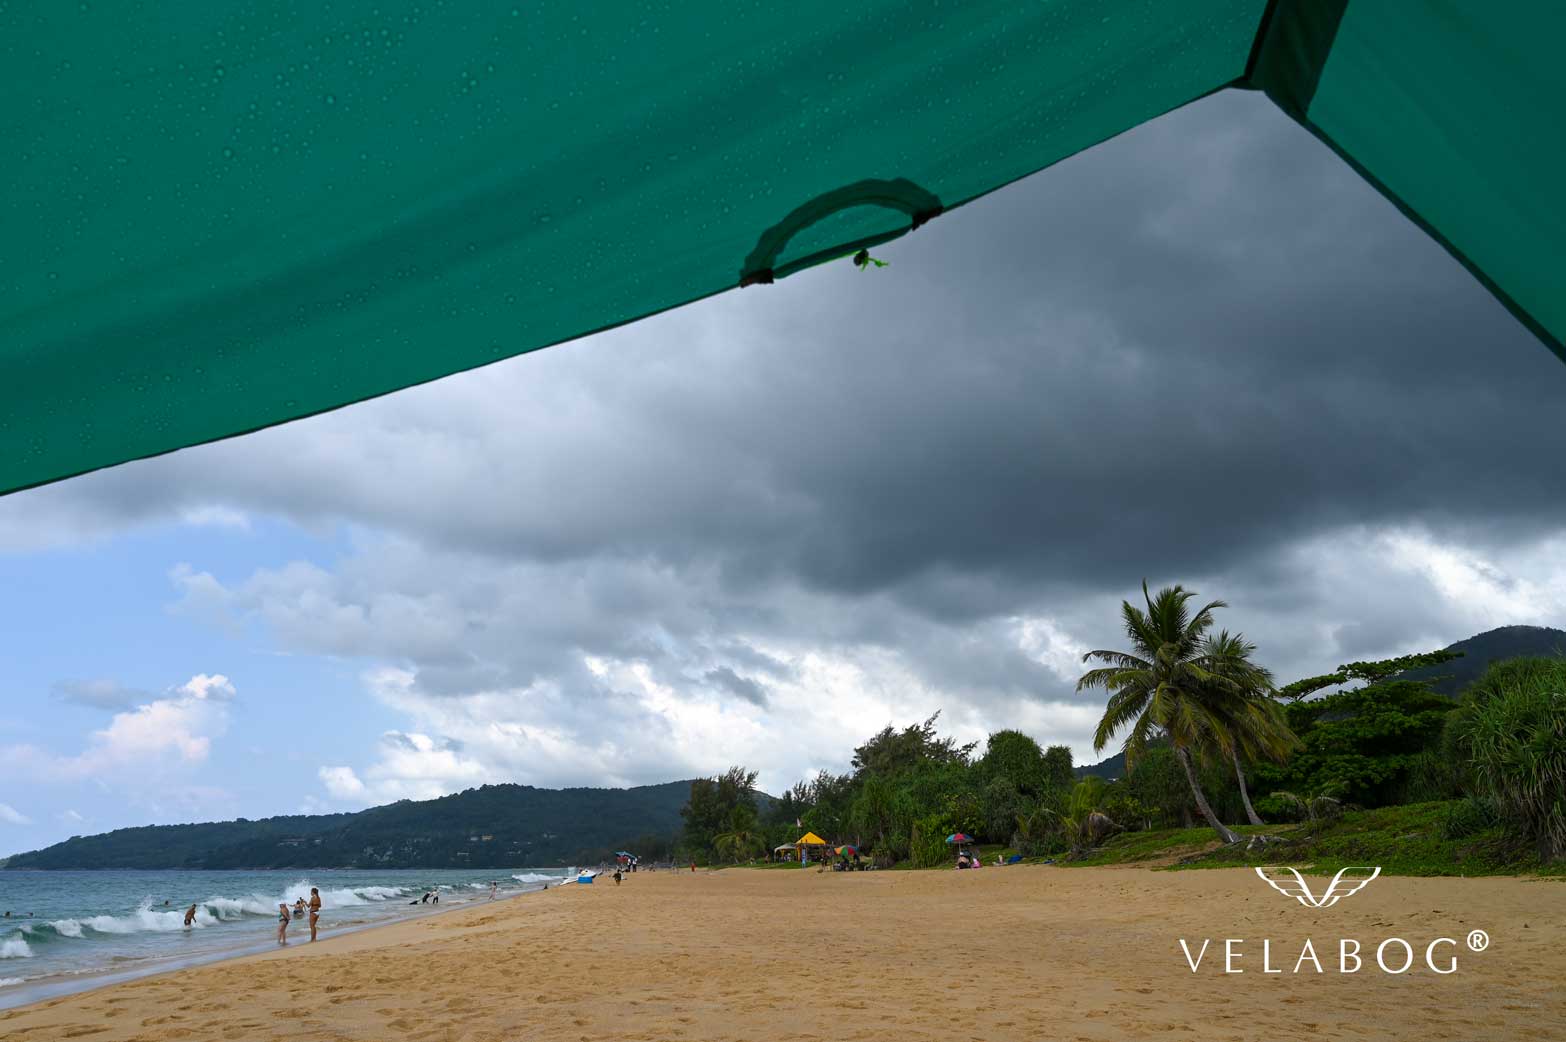 Toldo para playa Velabog Breeze verde. La mejor refugio y protección en la playa incluso en caso de chubasco. La mejor carpa en la playa. Opción de montaje - días sin viento, con poco viento o racheado. Vista desde abajo. Detalles.